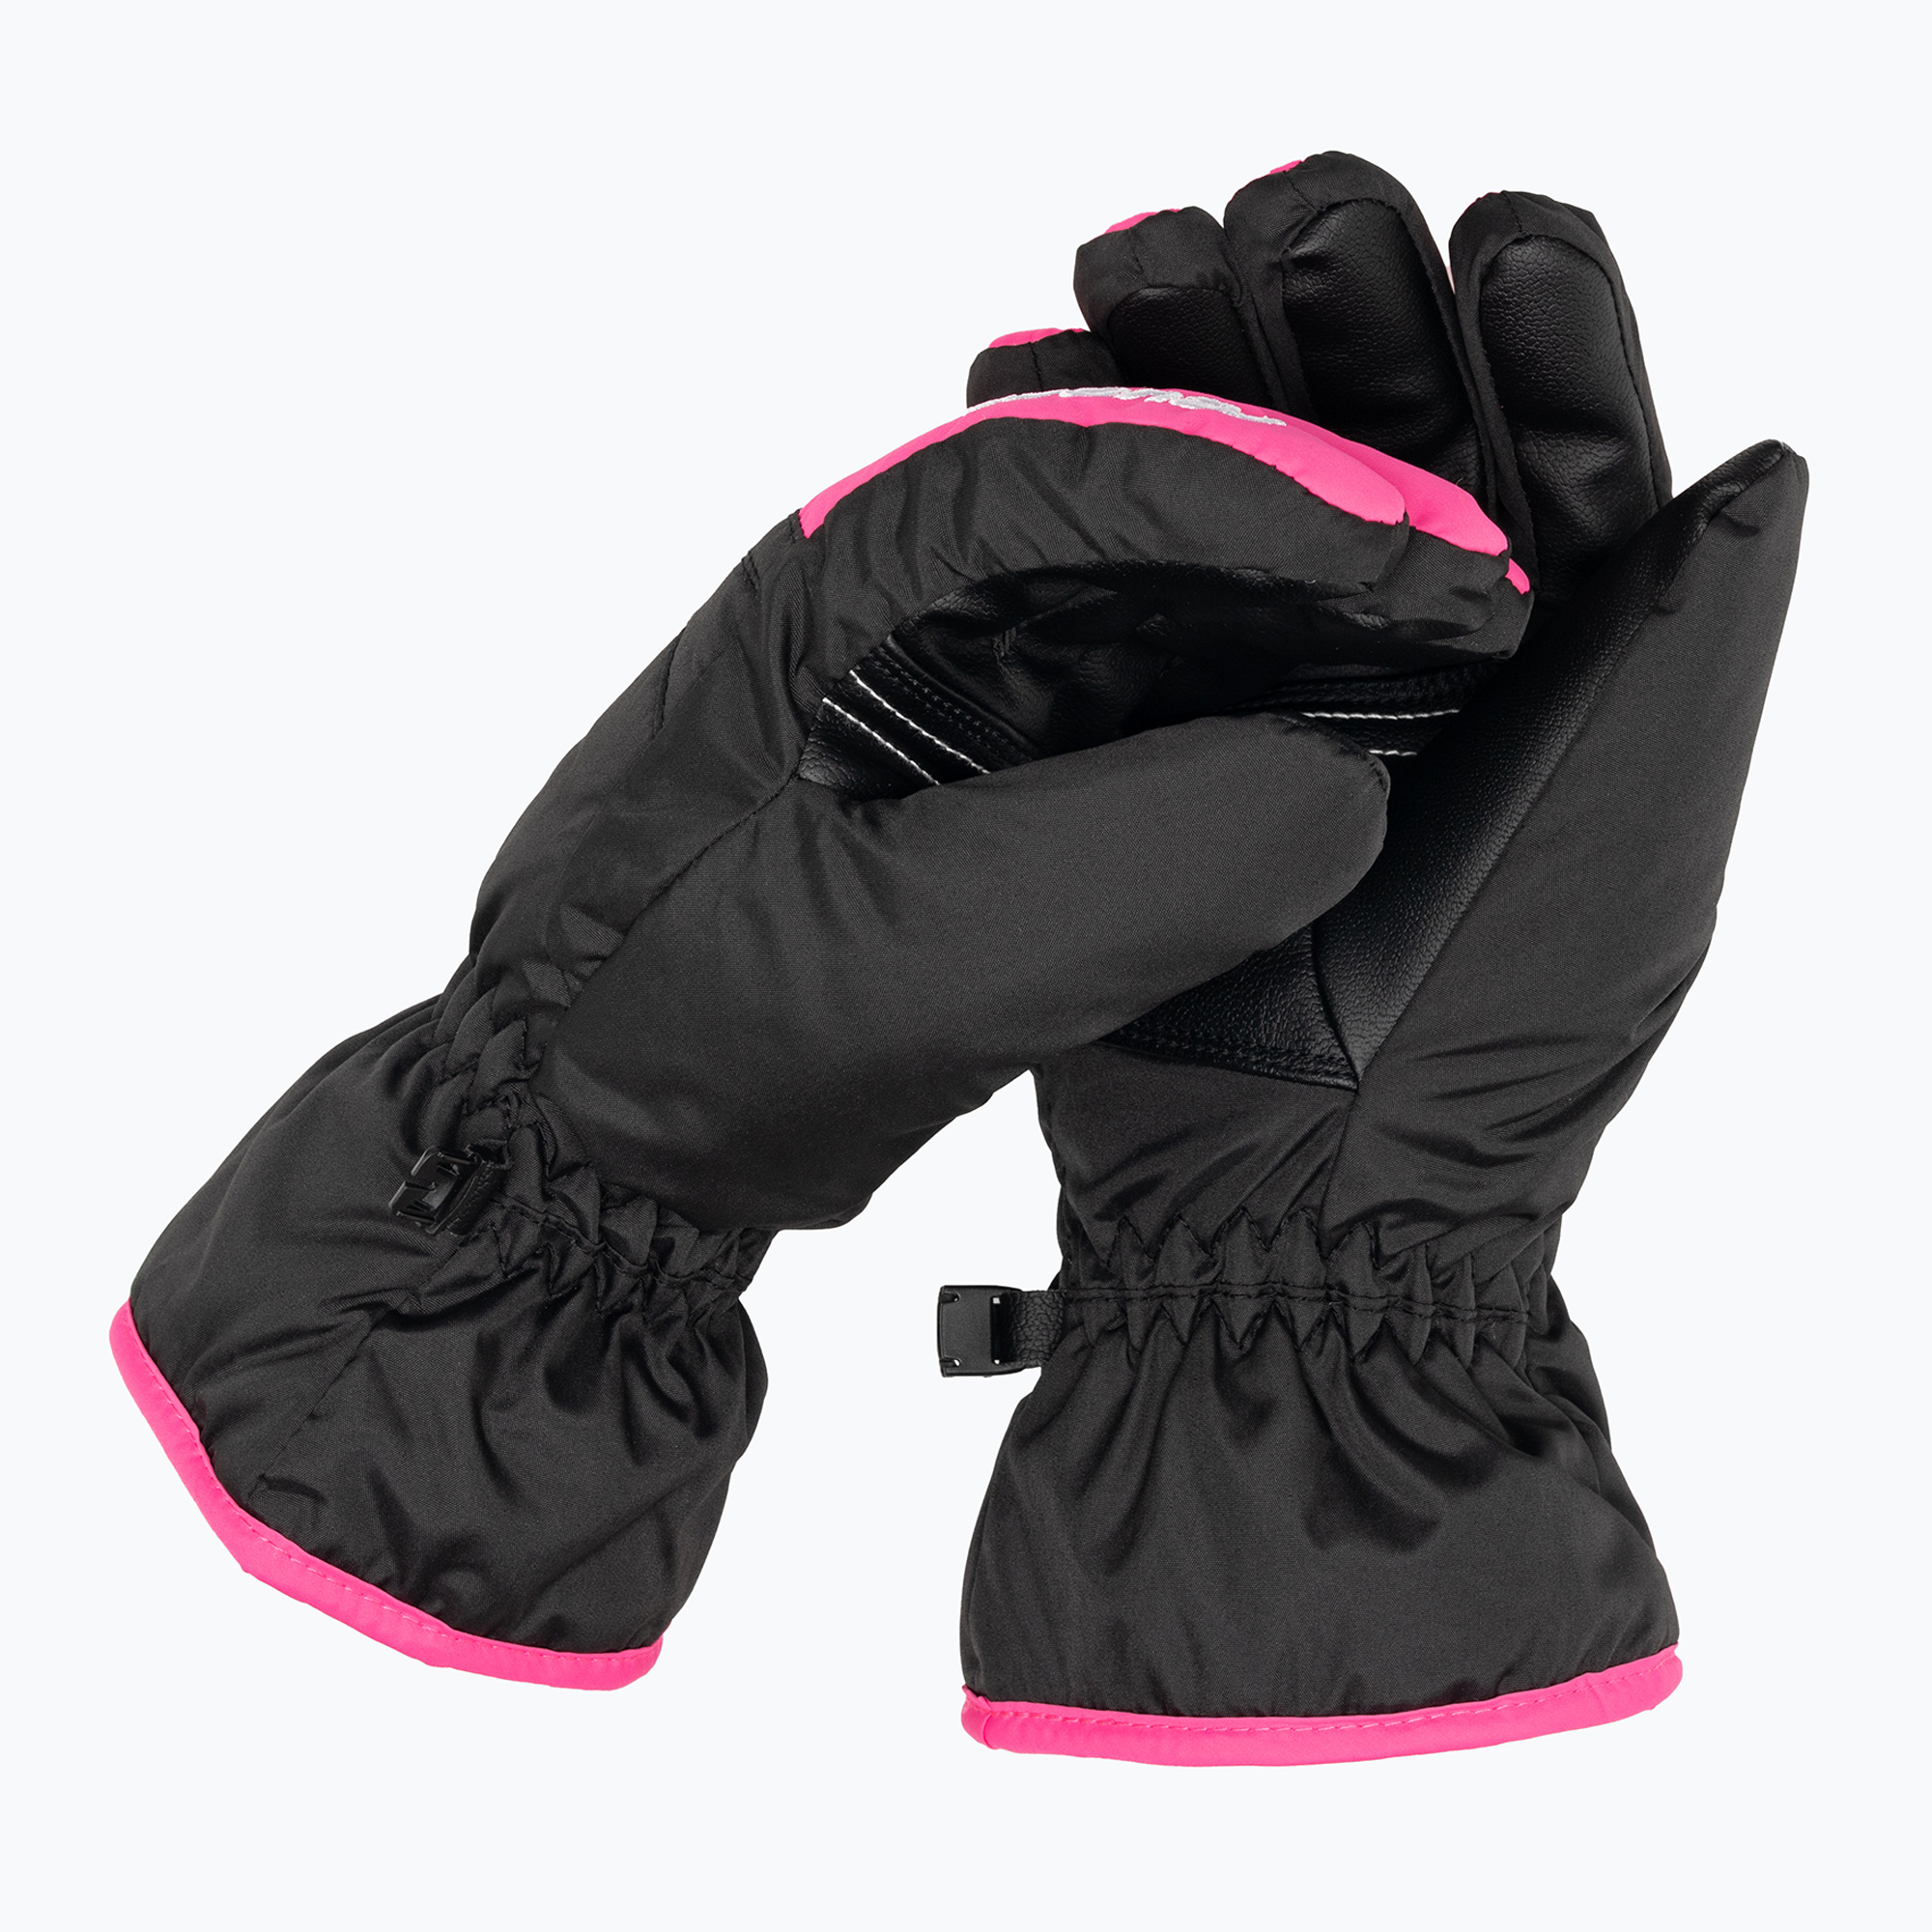 Mănuși de schi pentru copii Reusch Alan black/pink glo